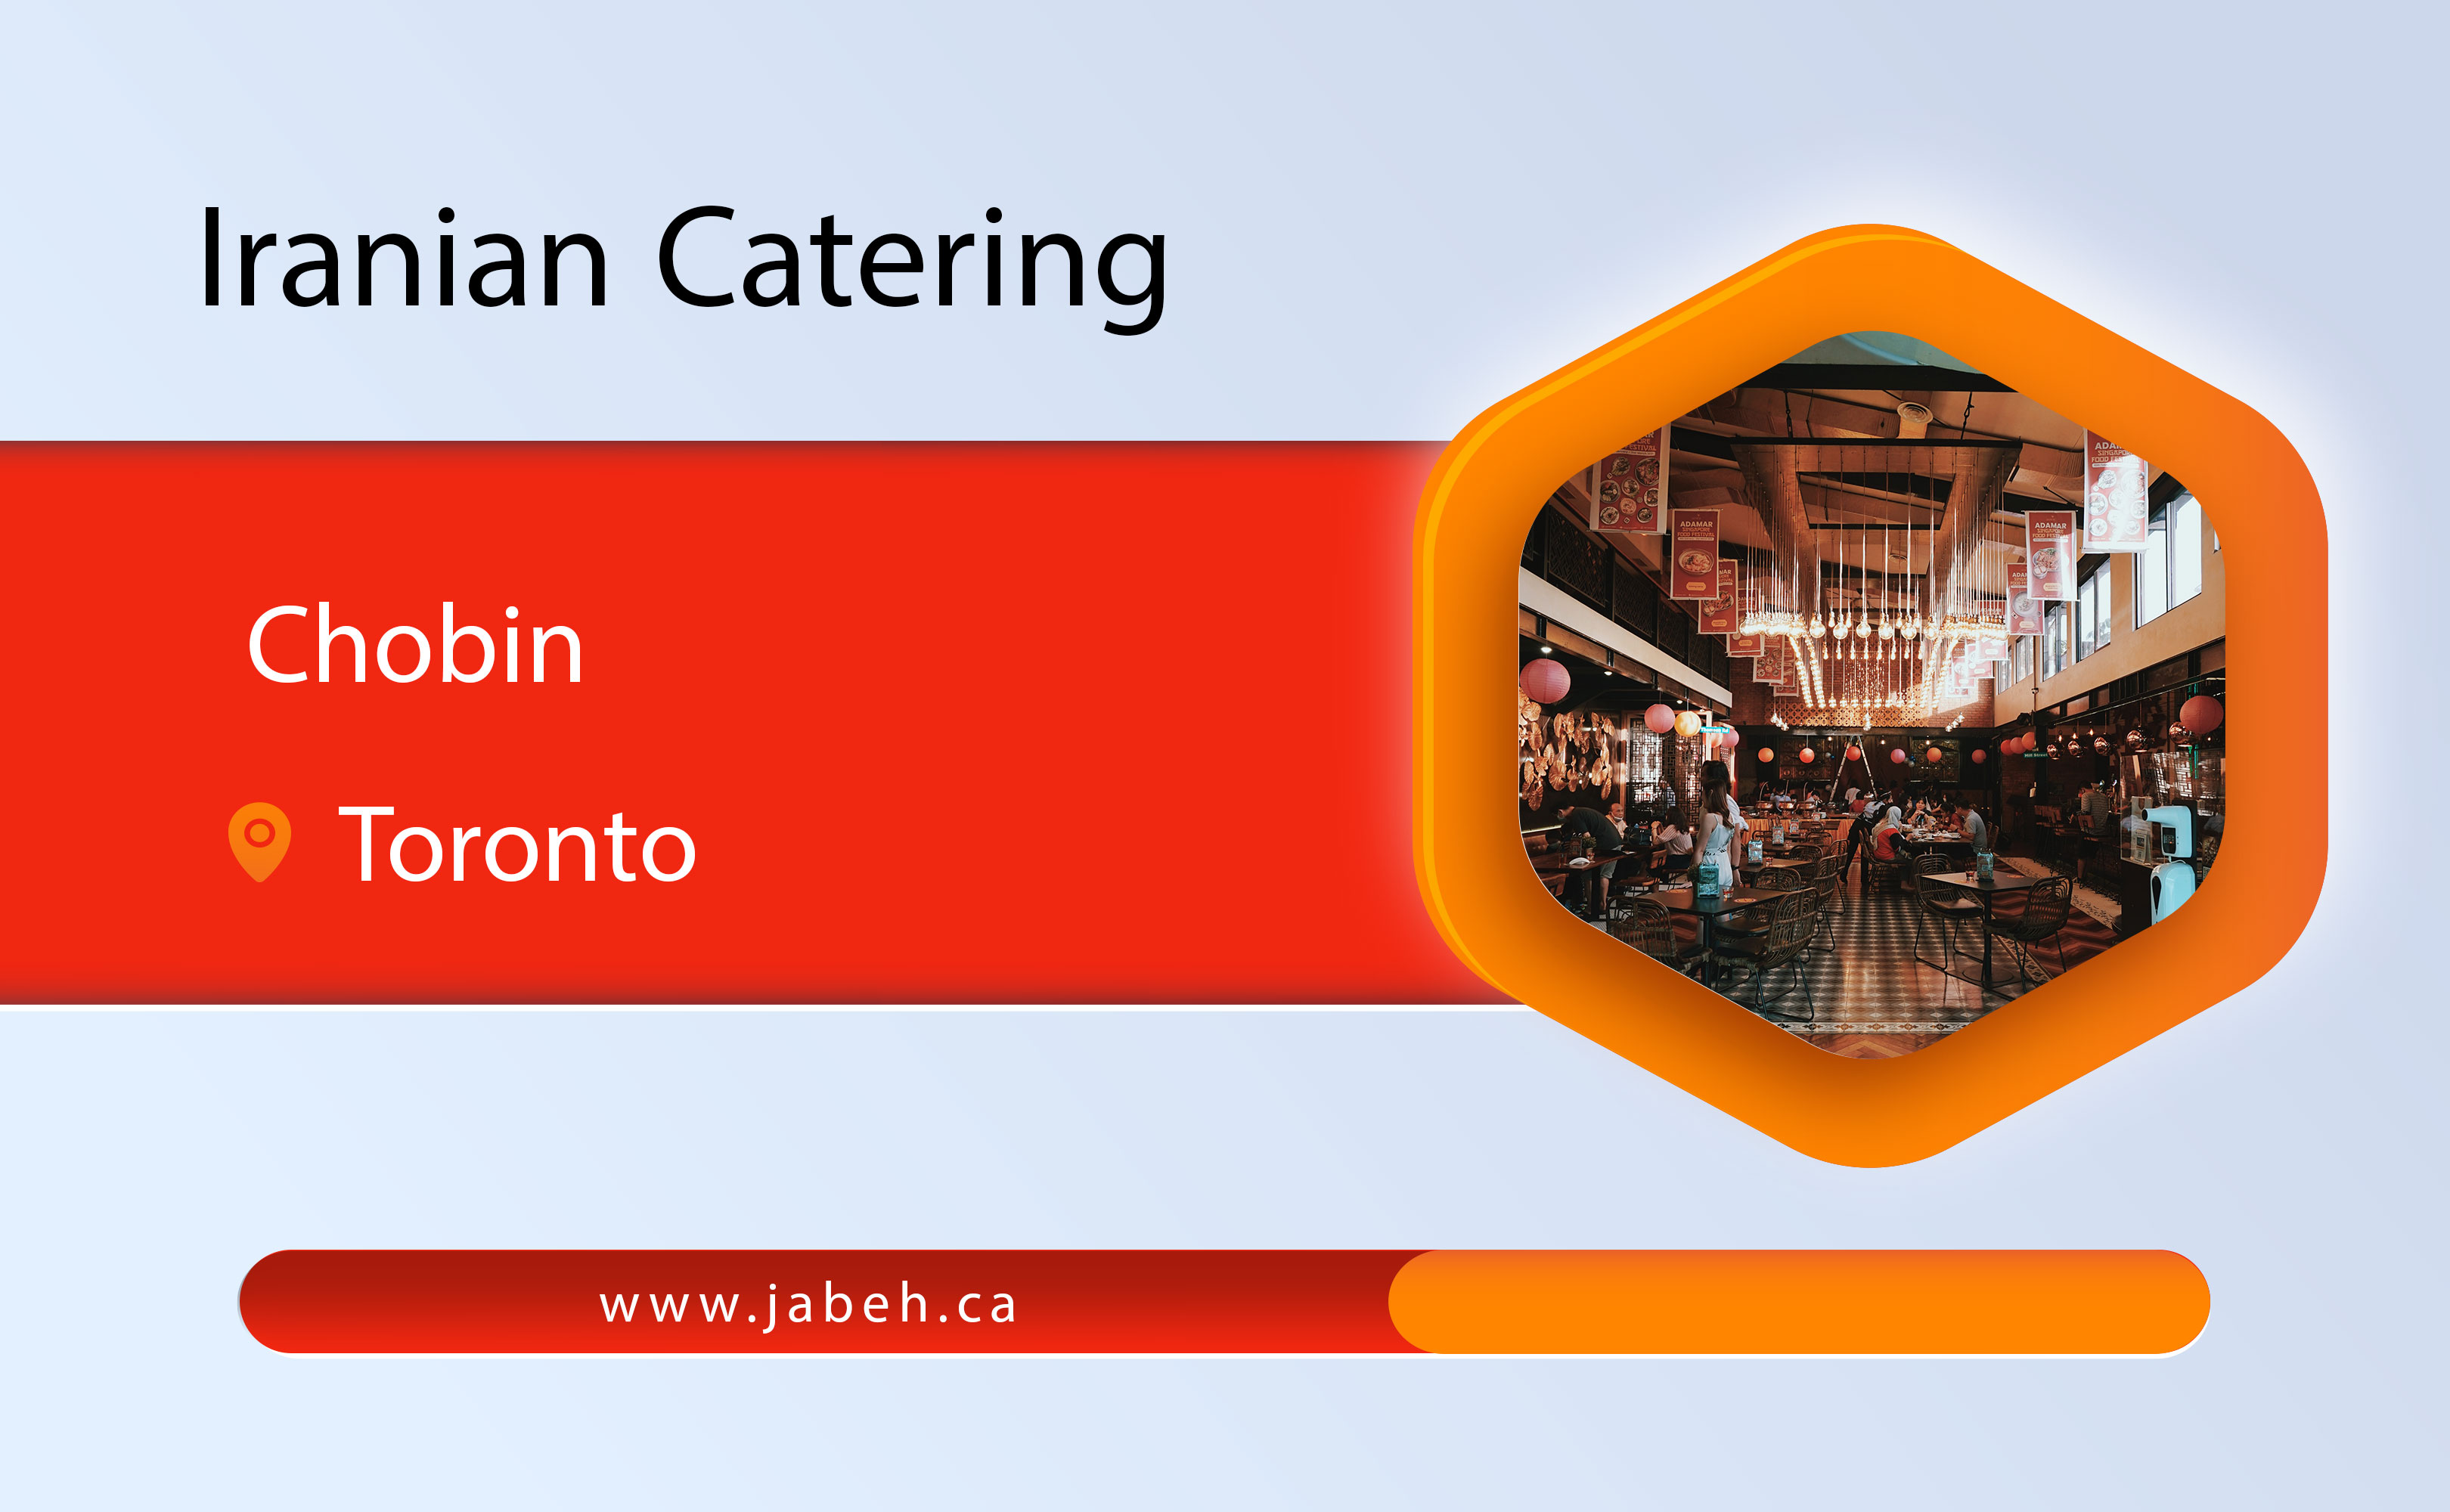 Chubin Iranian catering in Toronto